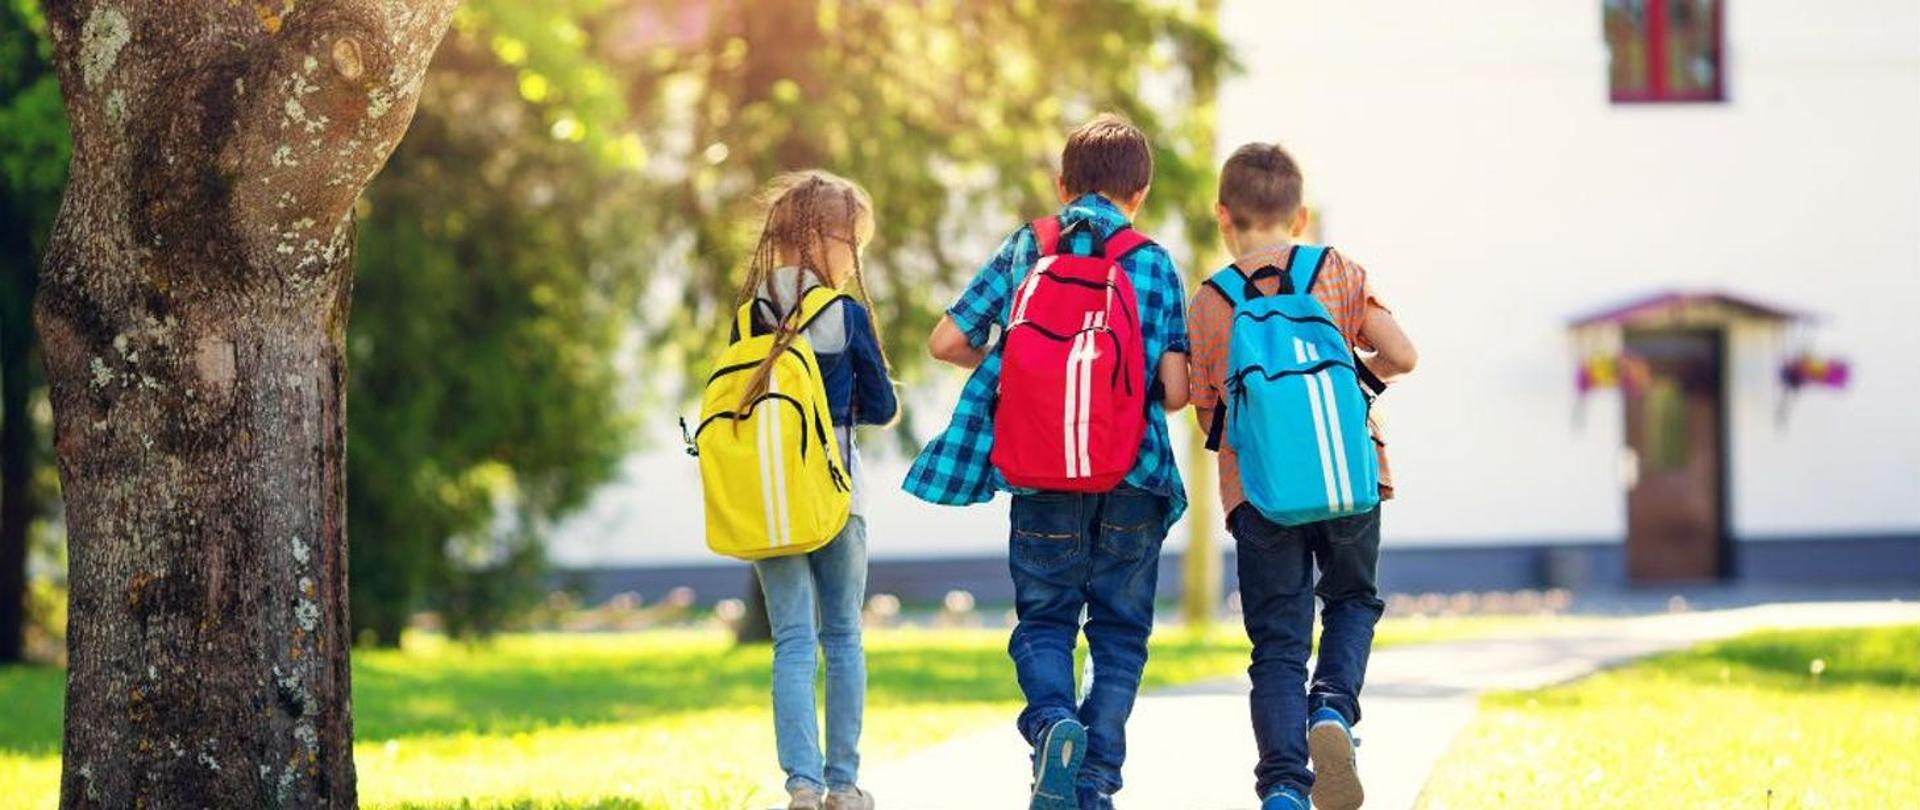 Trójka dzieci: dziewczynka z żółtym tornistrem i dwójka chłopców z czerwonym i niebieskim tornistrem idą ścieżką do szkoły.